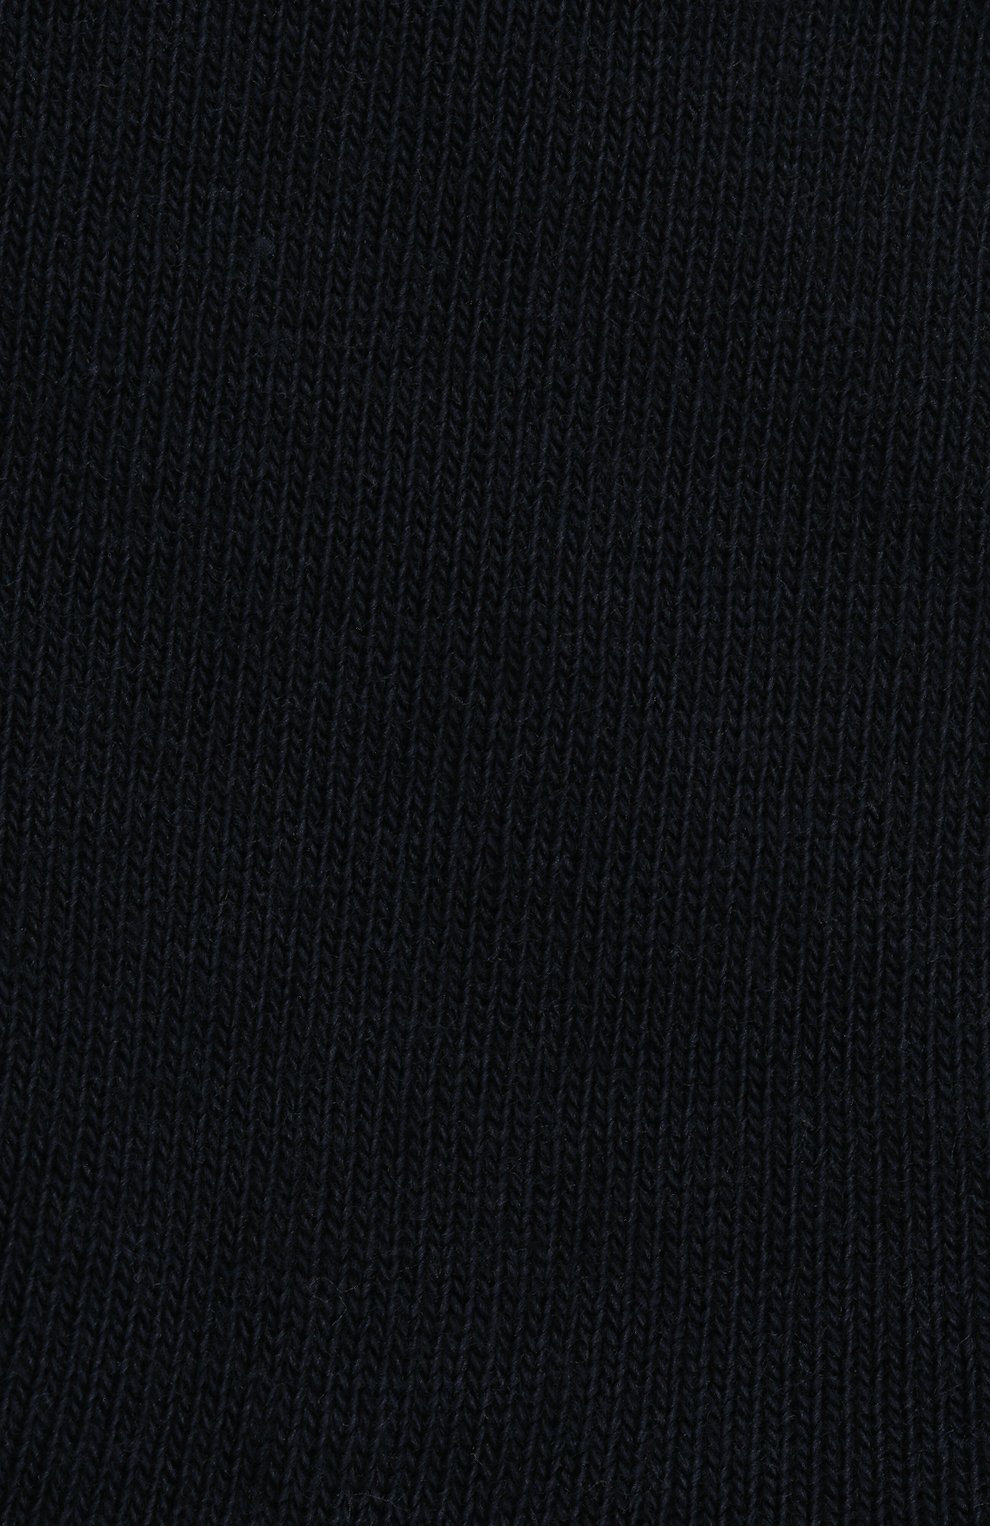 Детские носки FALKE темно-синего цвета, арт. 10645. | Фото 2 (Материал: Текстиль, Хлопок; Региональные ограничения белый список (Axapta Mercury): RU; Кросс-КТ: Носки)